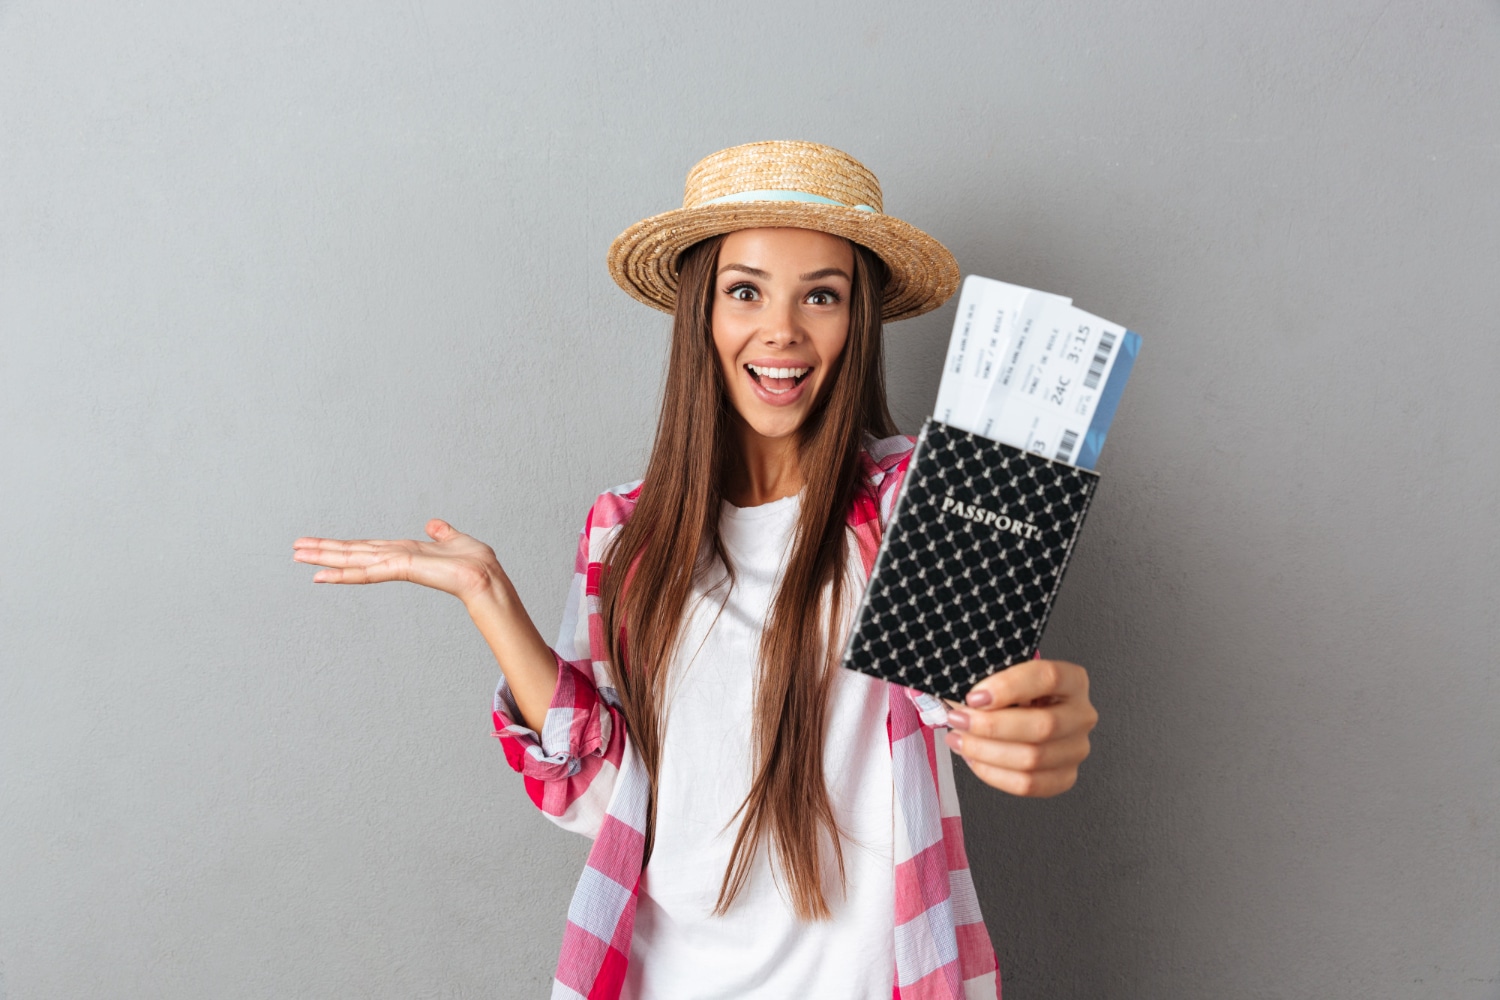 मुस्कुराती हुई प्रसन्न महिला यात्री स्ट्रॉ टोपी का क्लोज़अप चित्र, जिसमें हवाई जहाज के टिकट के साथ पासपोर्ट दिखाया गया है